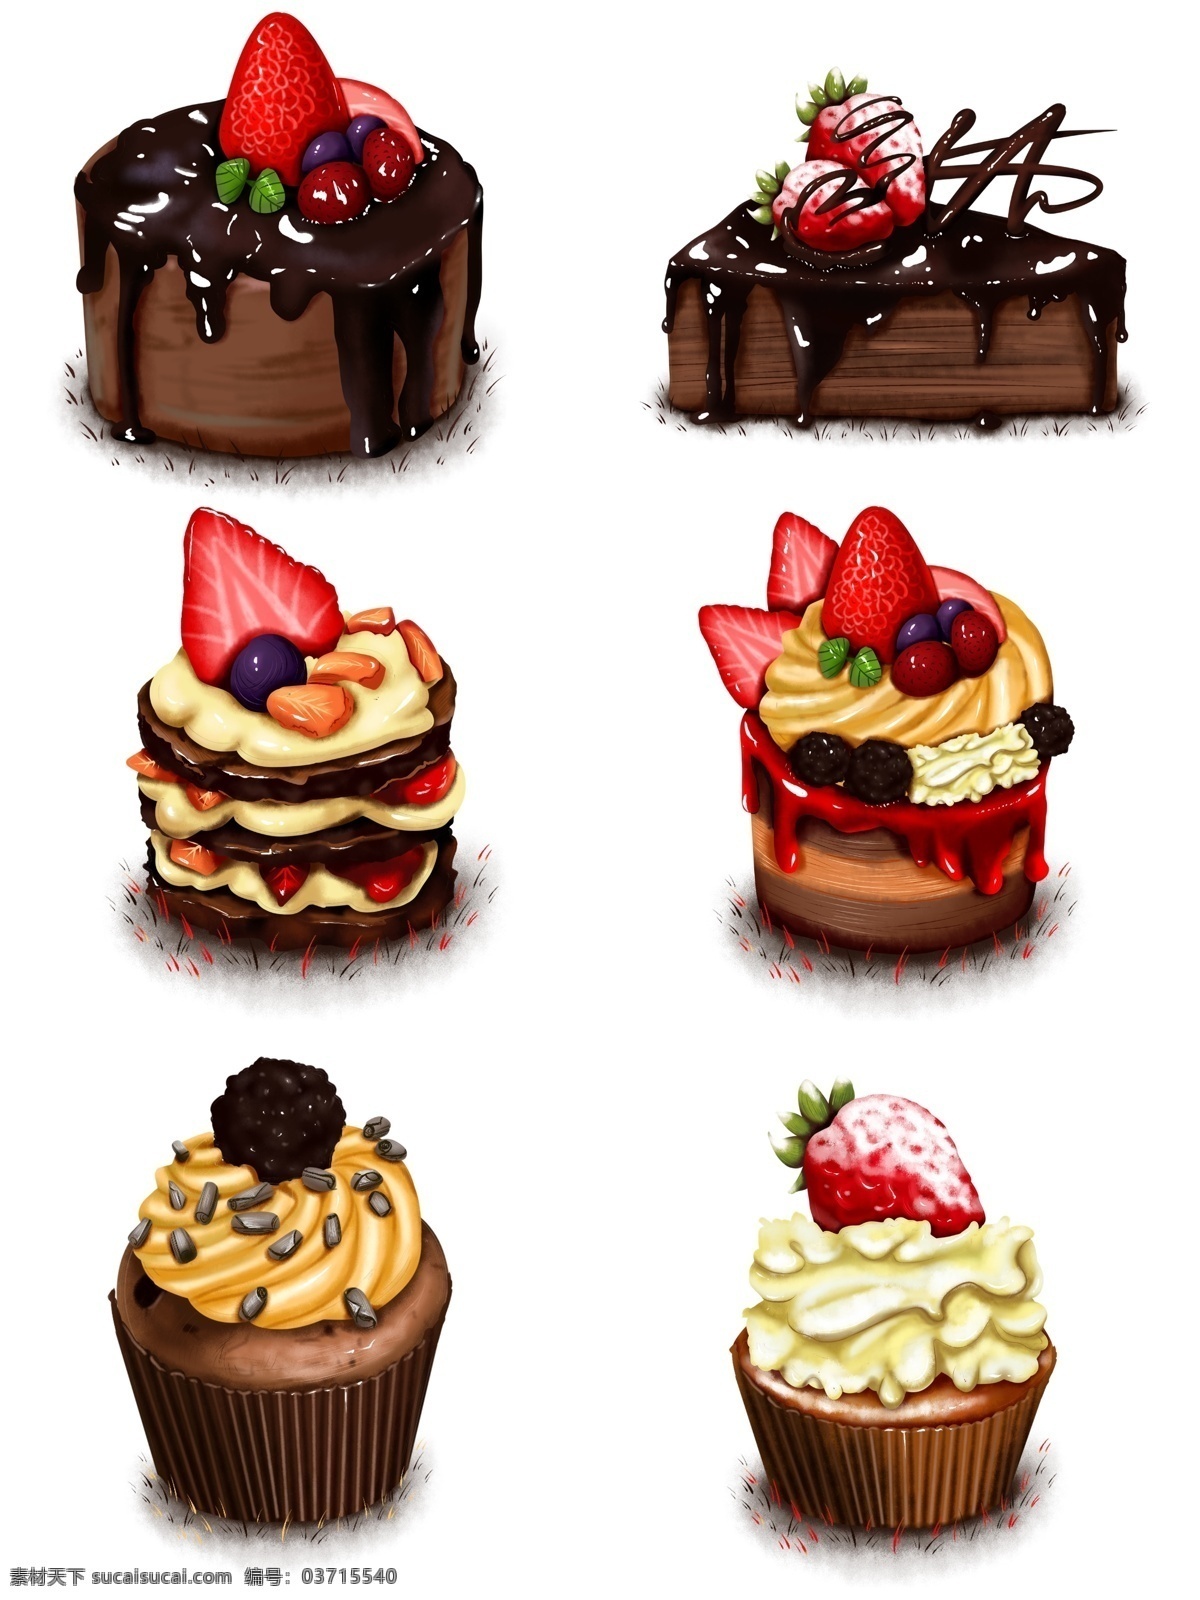 原创 手绘 食物 巧克力 草莓 蓝莓 糖霜 杯子 蛋糕 海报素材 商用 杯子蛋糕 元素 蛋糕组合